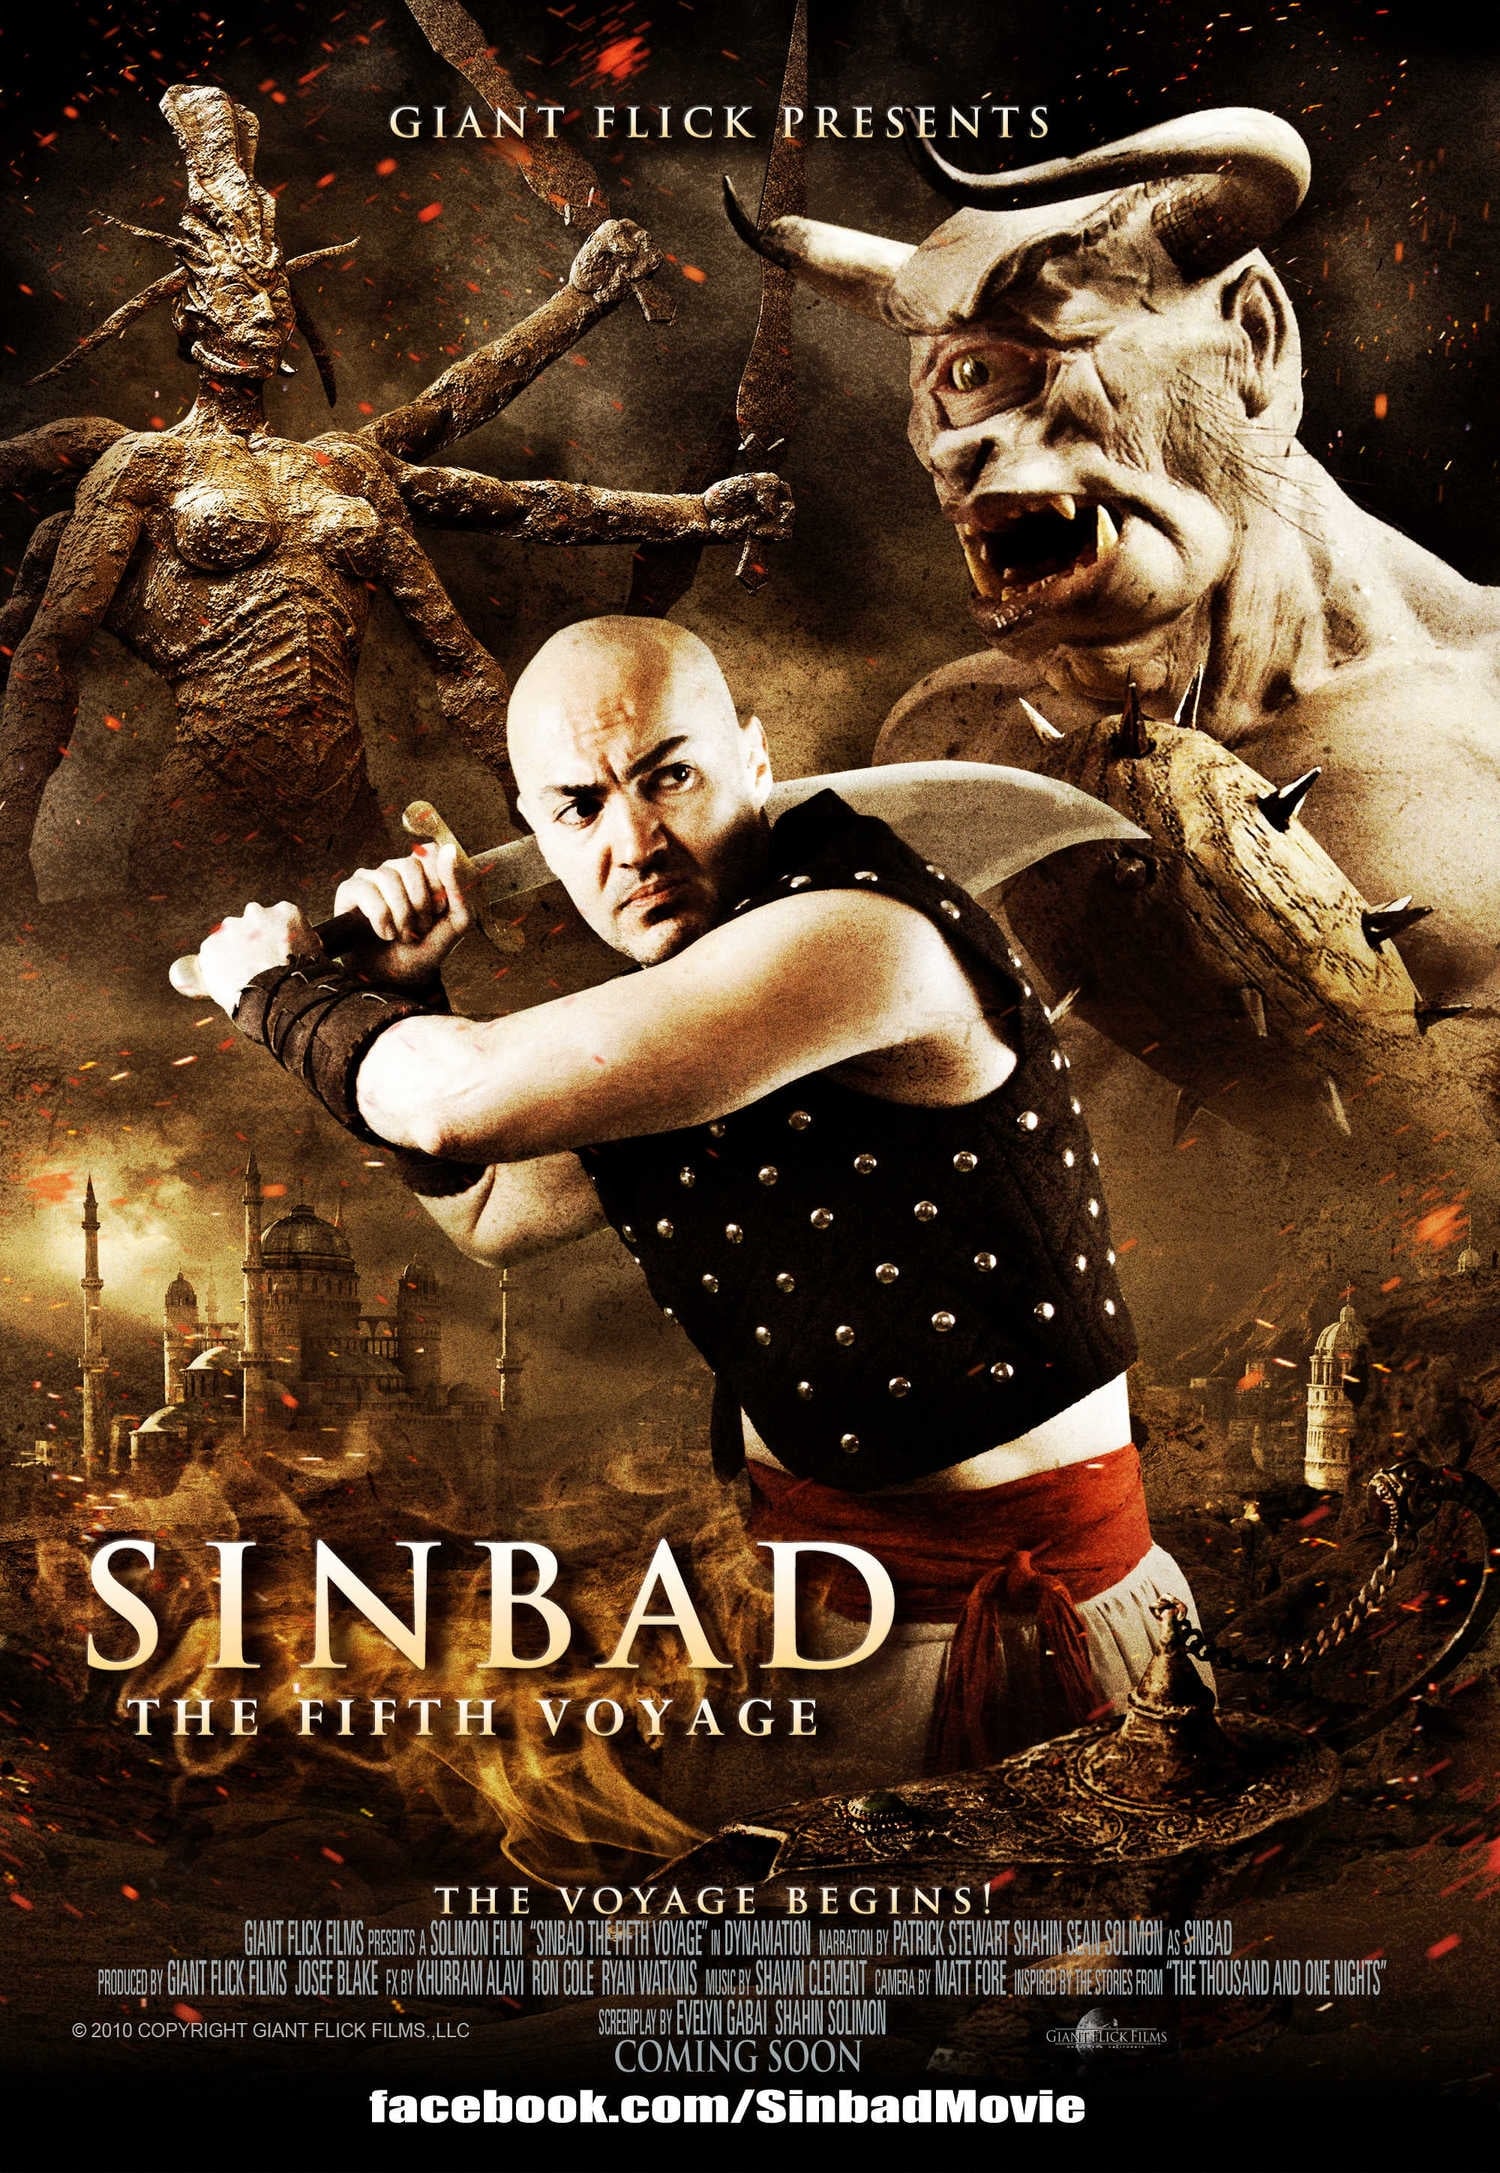 Cuộc Phiêu Lưu Thứ 5 Của Sinbad (Sinbad: The Fifth Voyage) [2014]